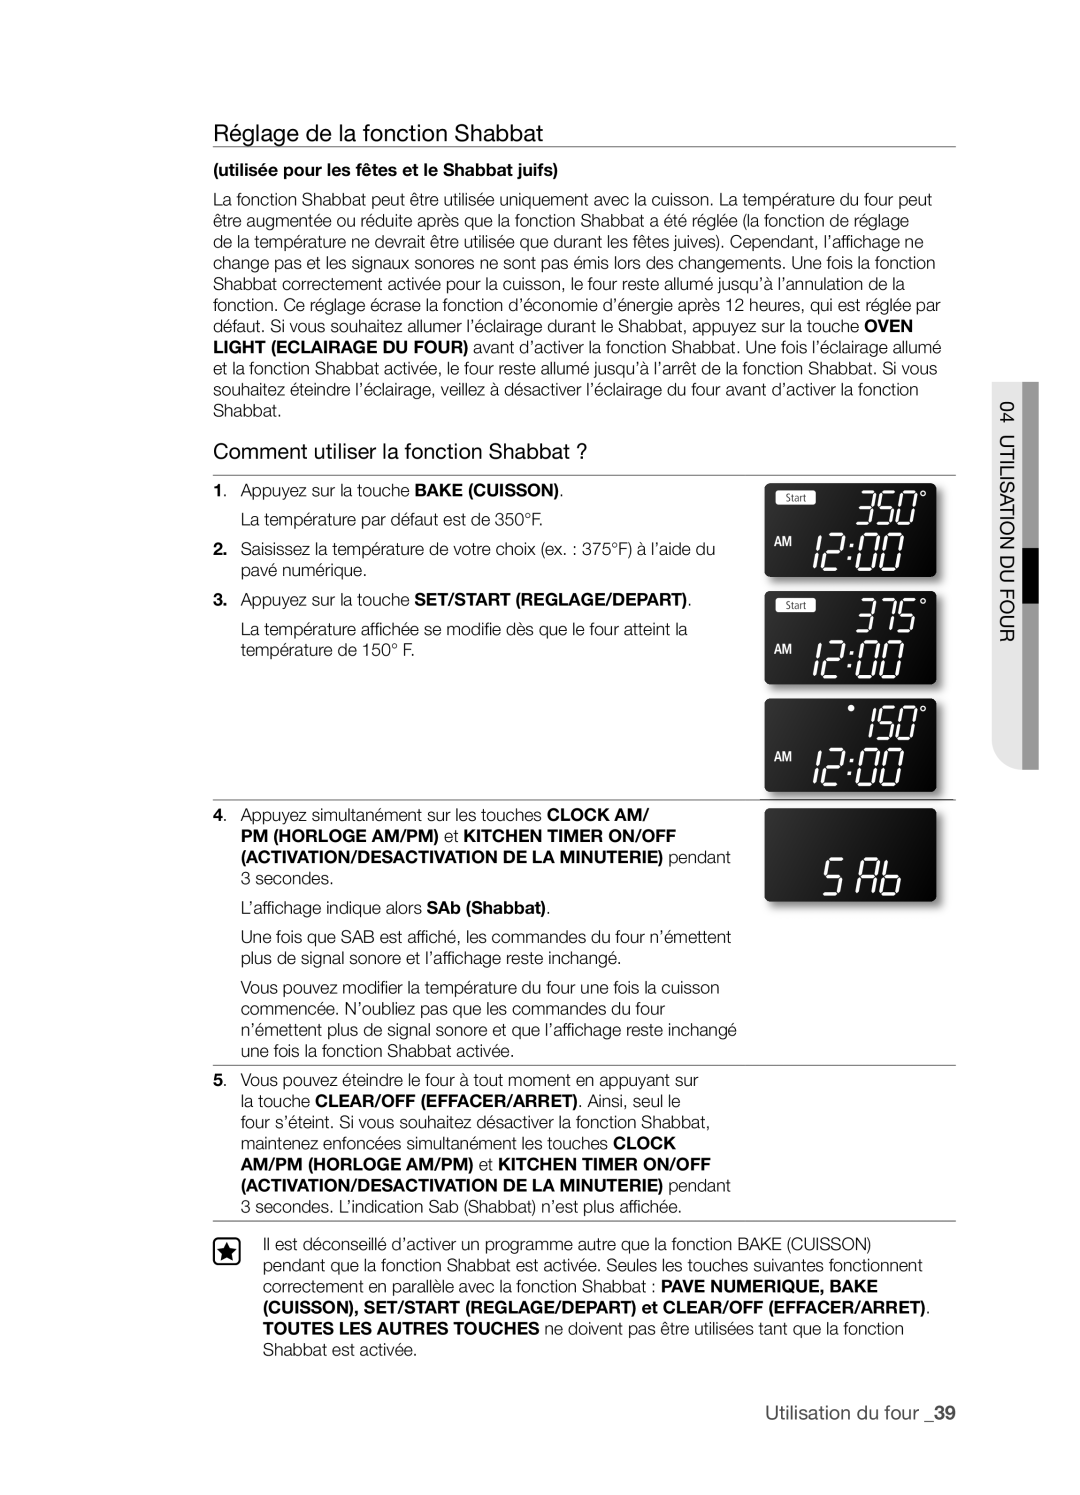 Samsung FTQ352IWX user manual Réglage de la fonction Shabbat, Comment utiliser la fonction Shabbat ?, Utilisation Du Four 